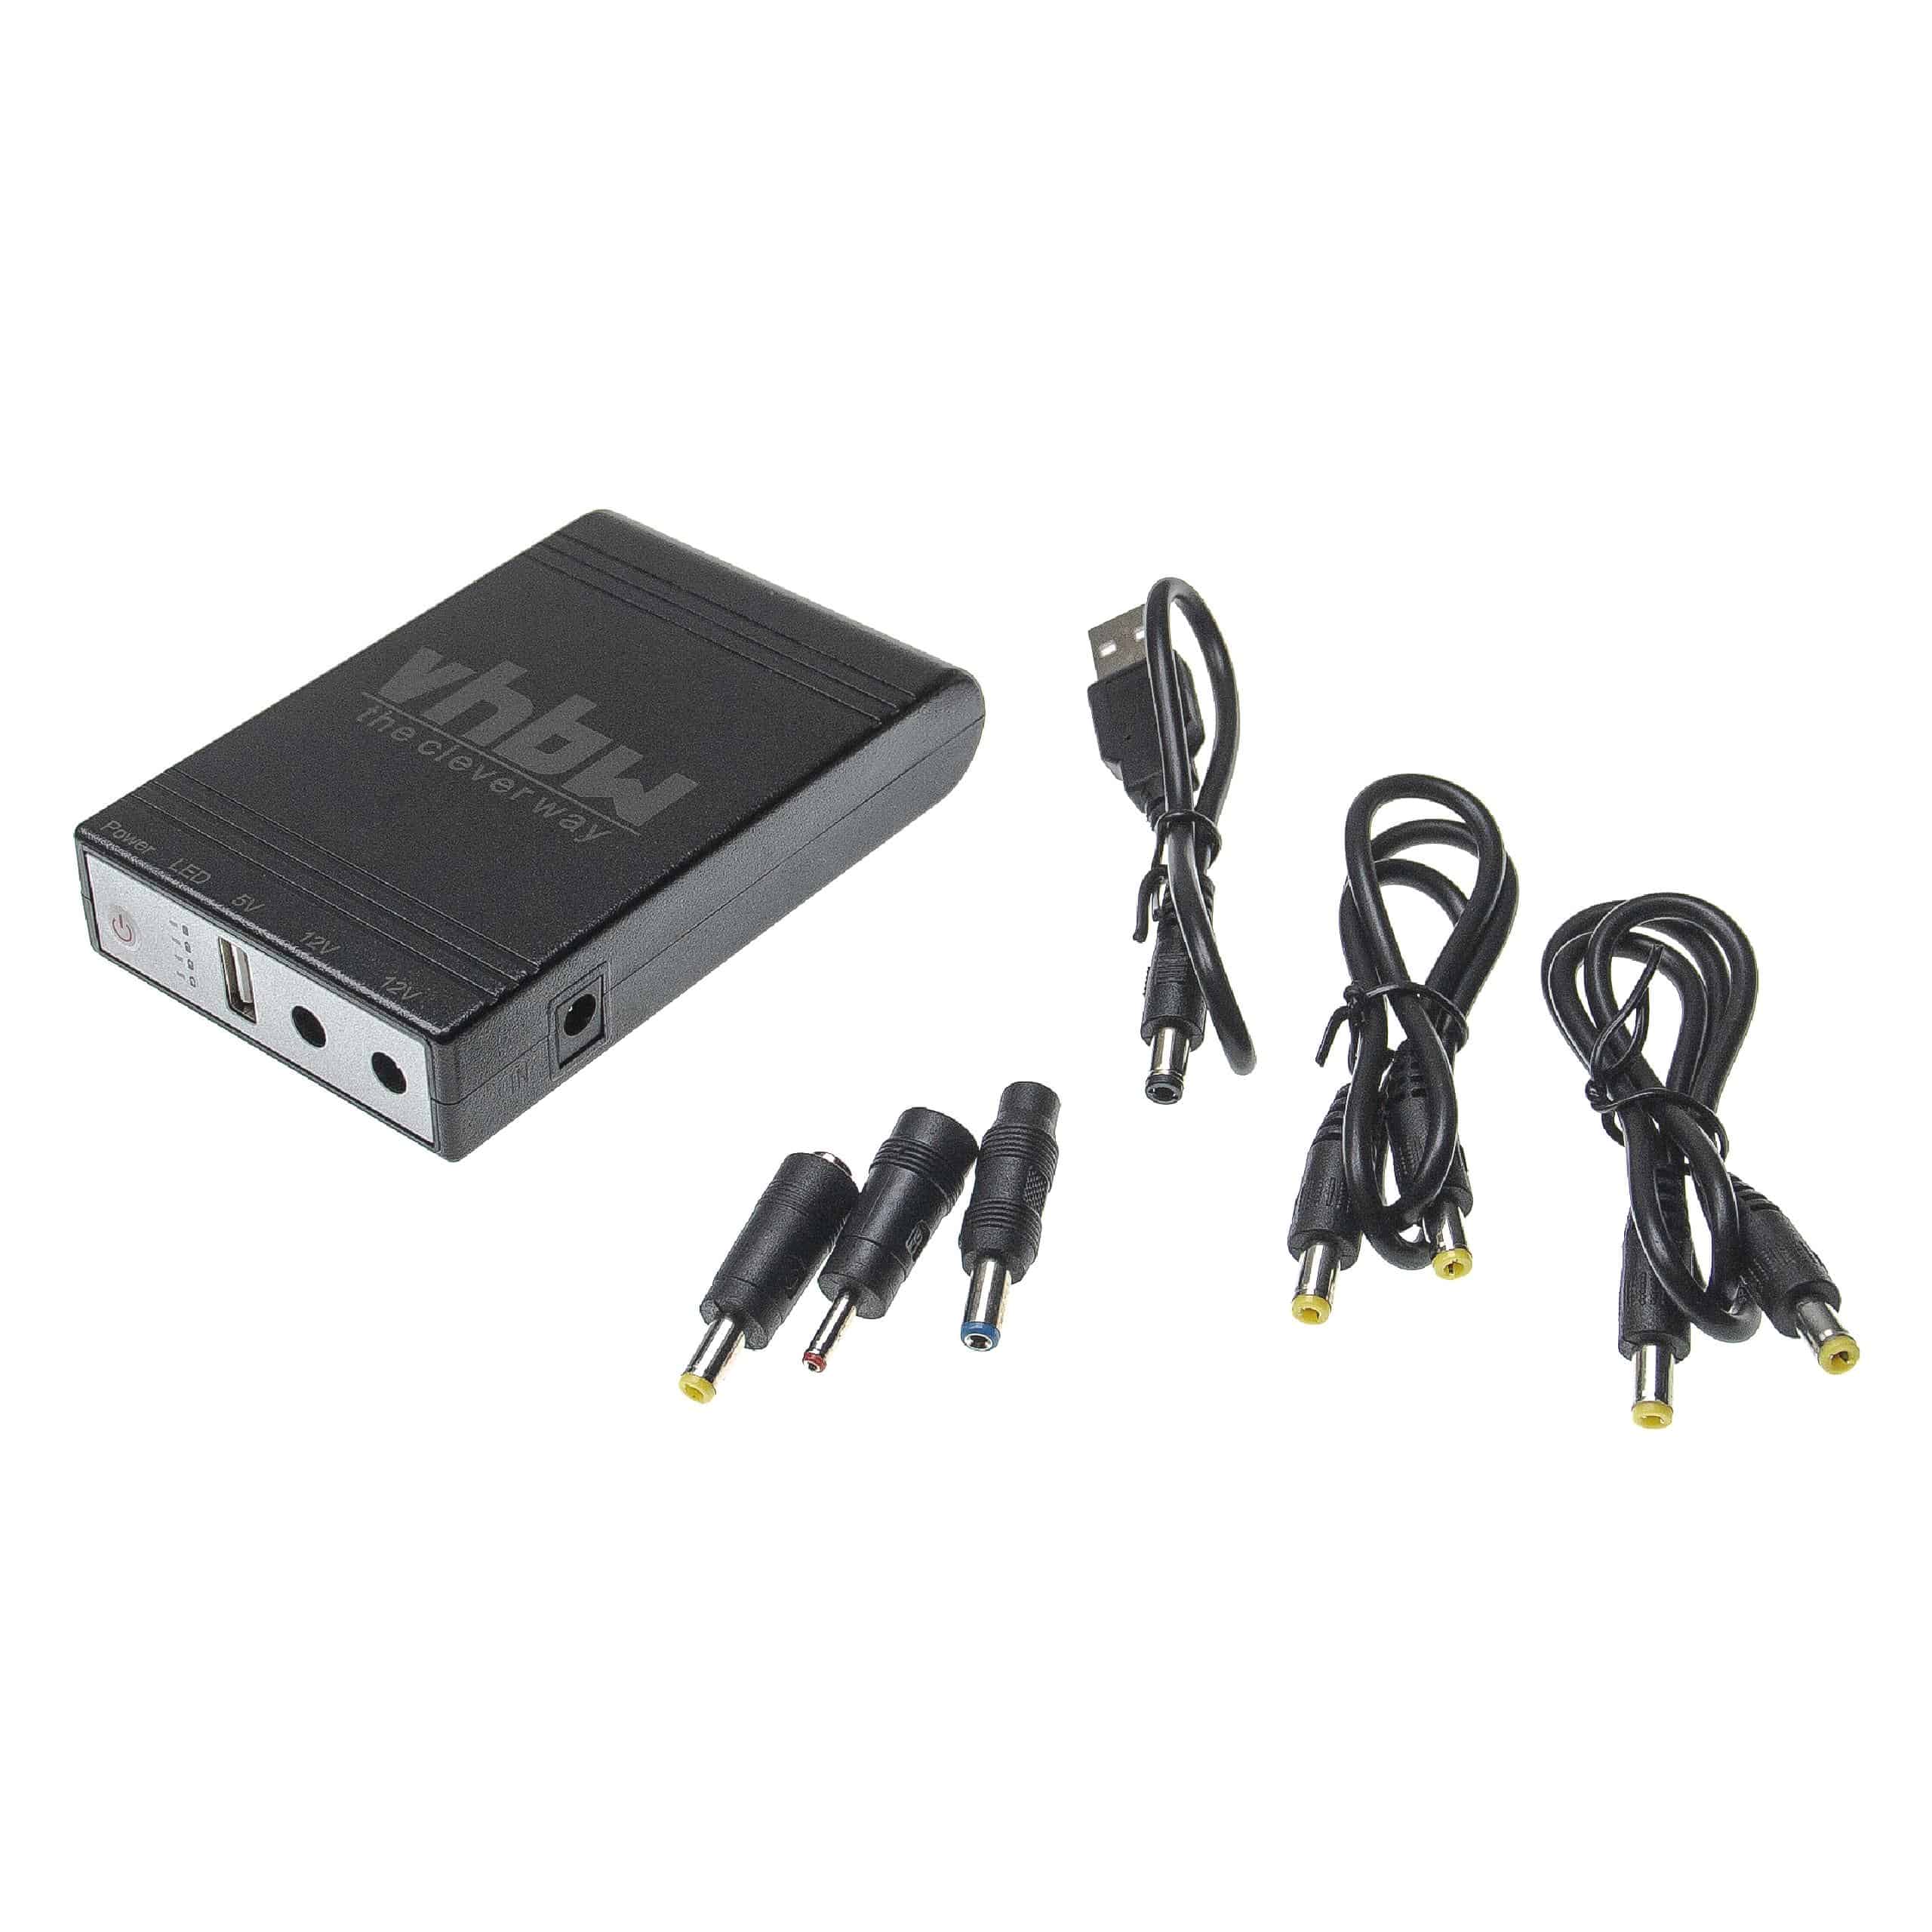 SAI Mini para router, cámaras IP, módems, ordenadores, etc. - USB 5 V / CC 12 V, 1,0 A